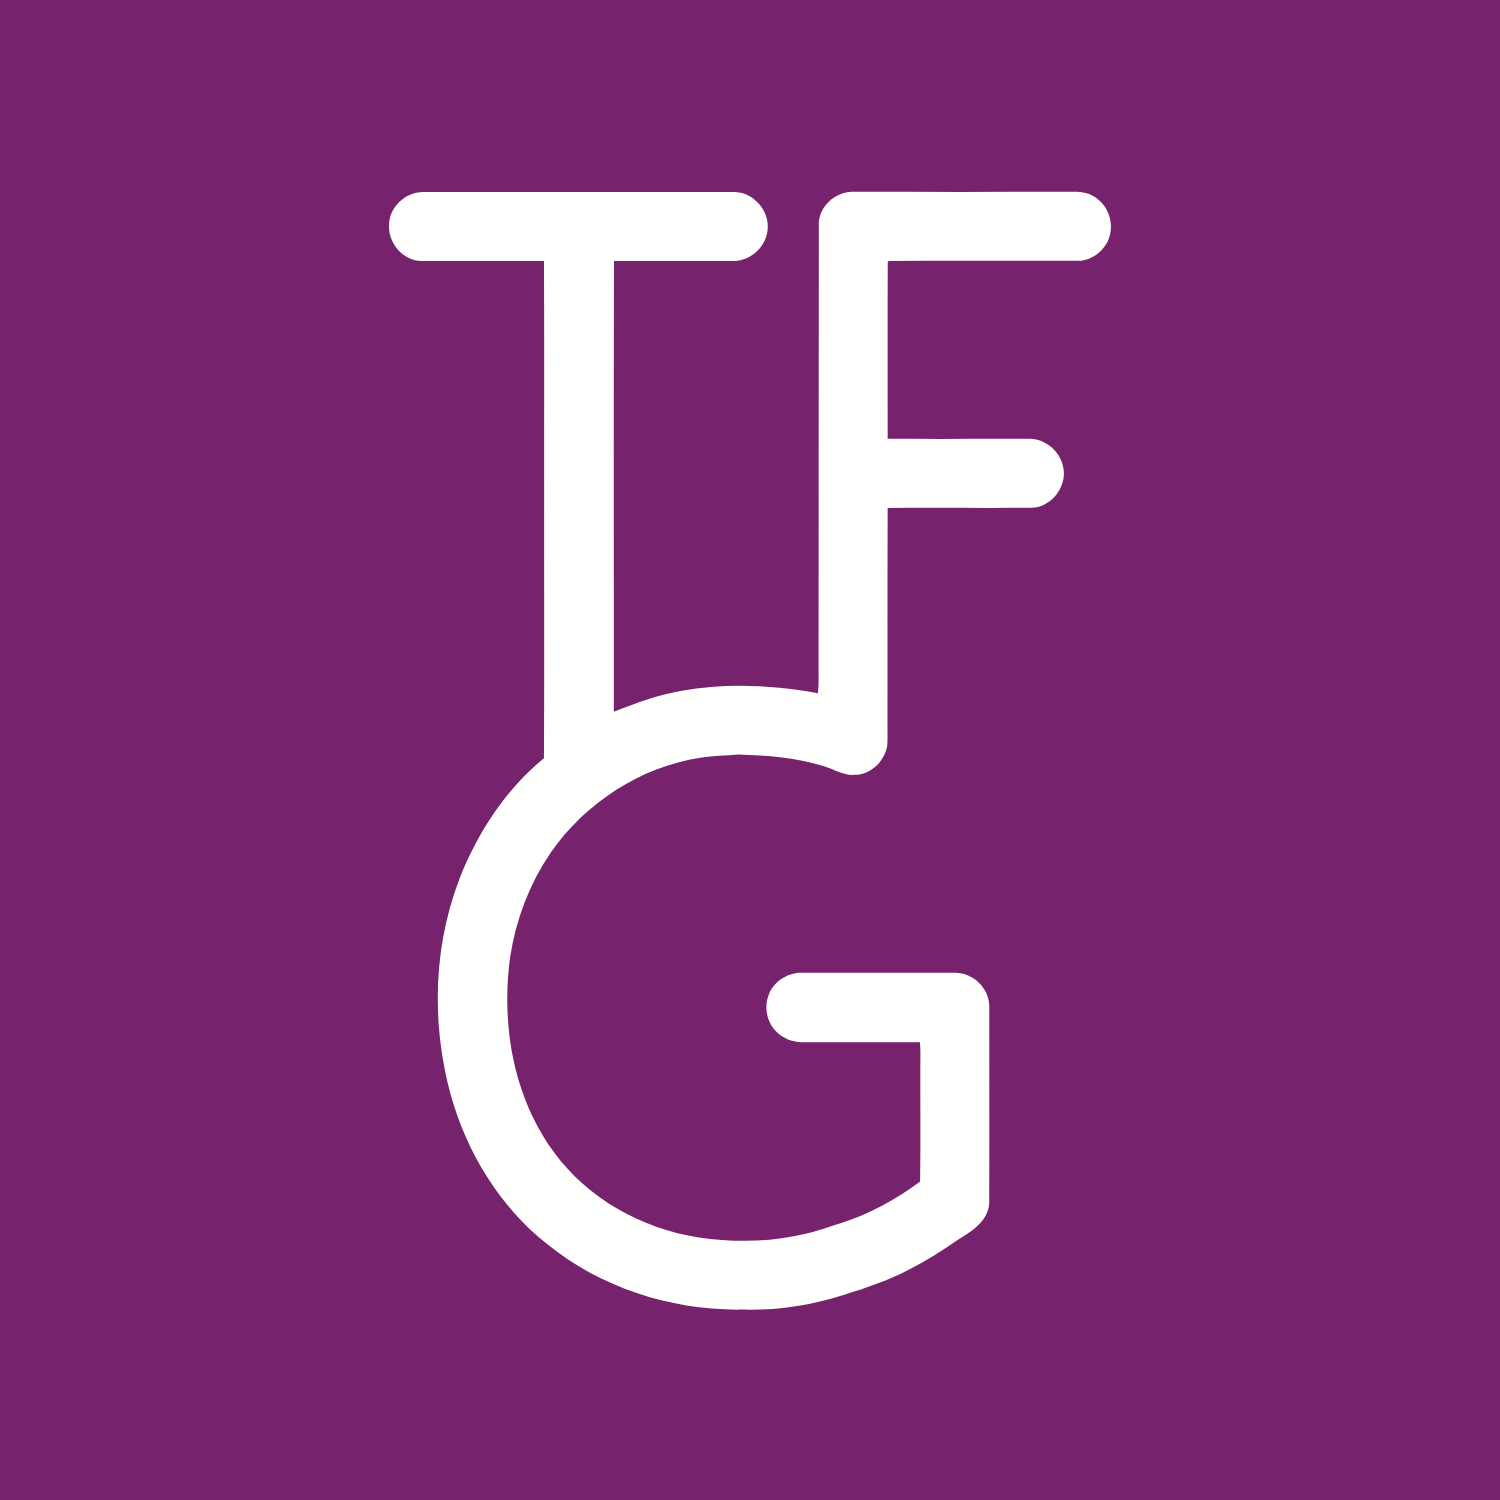 The Foschini Group logo (PNG transparent)